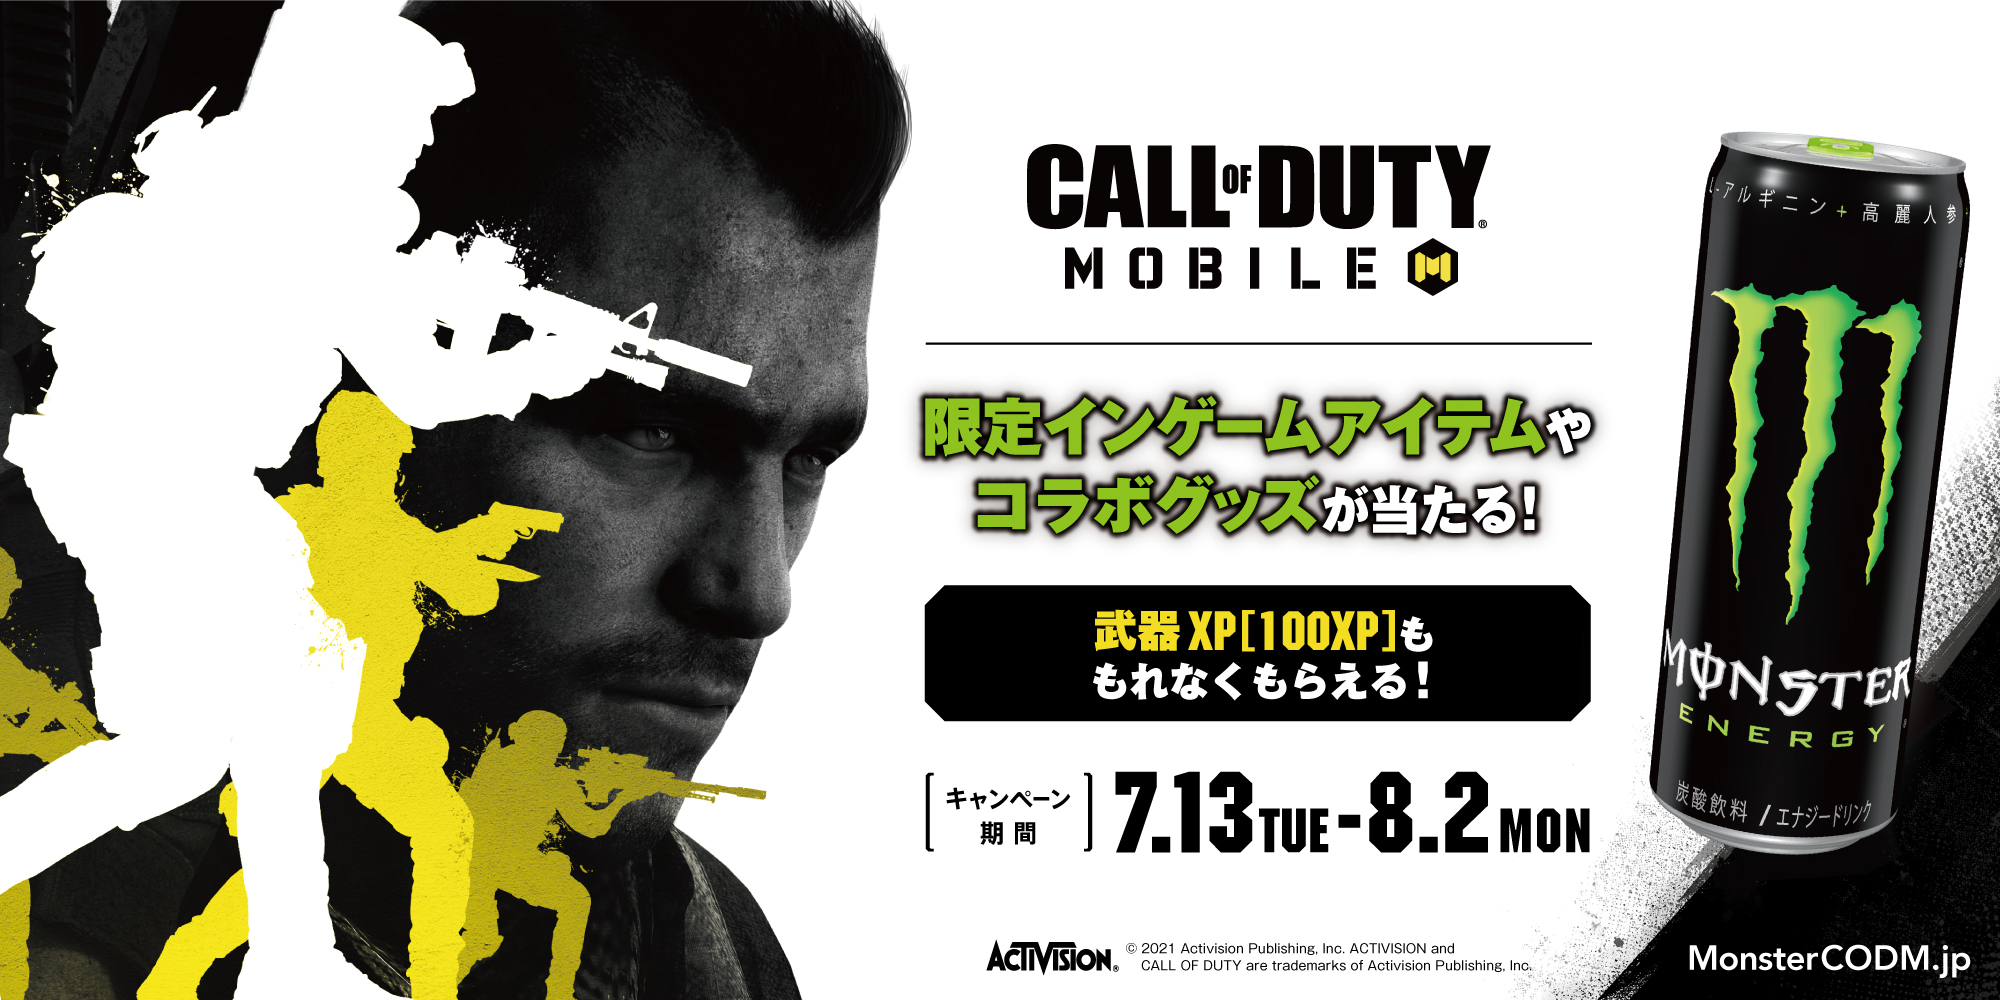 ファミリーマート限定 モンスターエナジー Call Of Duty Mobile コラボキャンペーン開催 モンスター エナジージャパン合同会社のプレスリリース